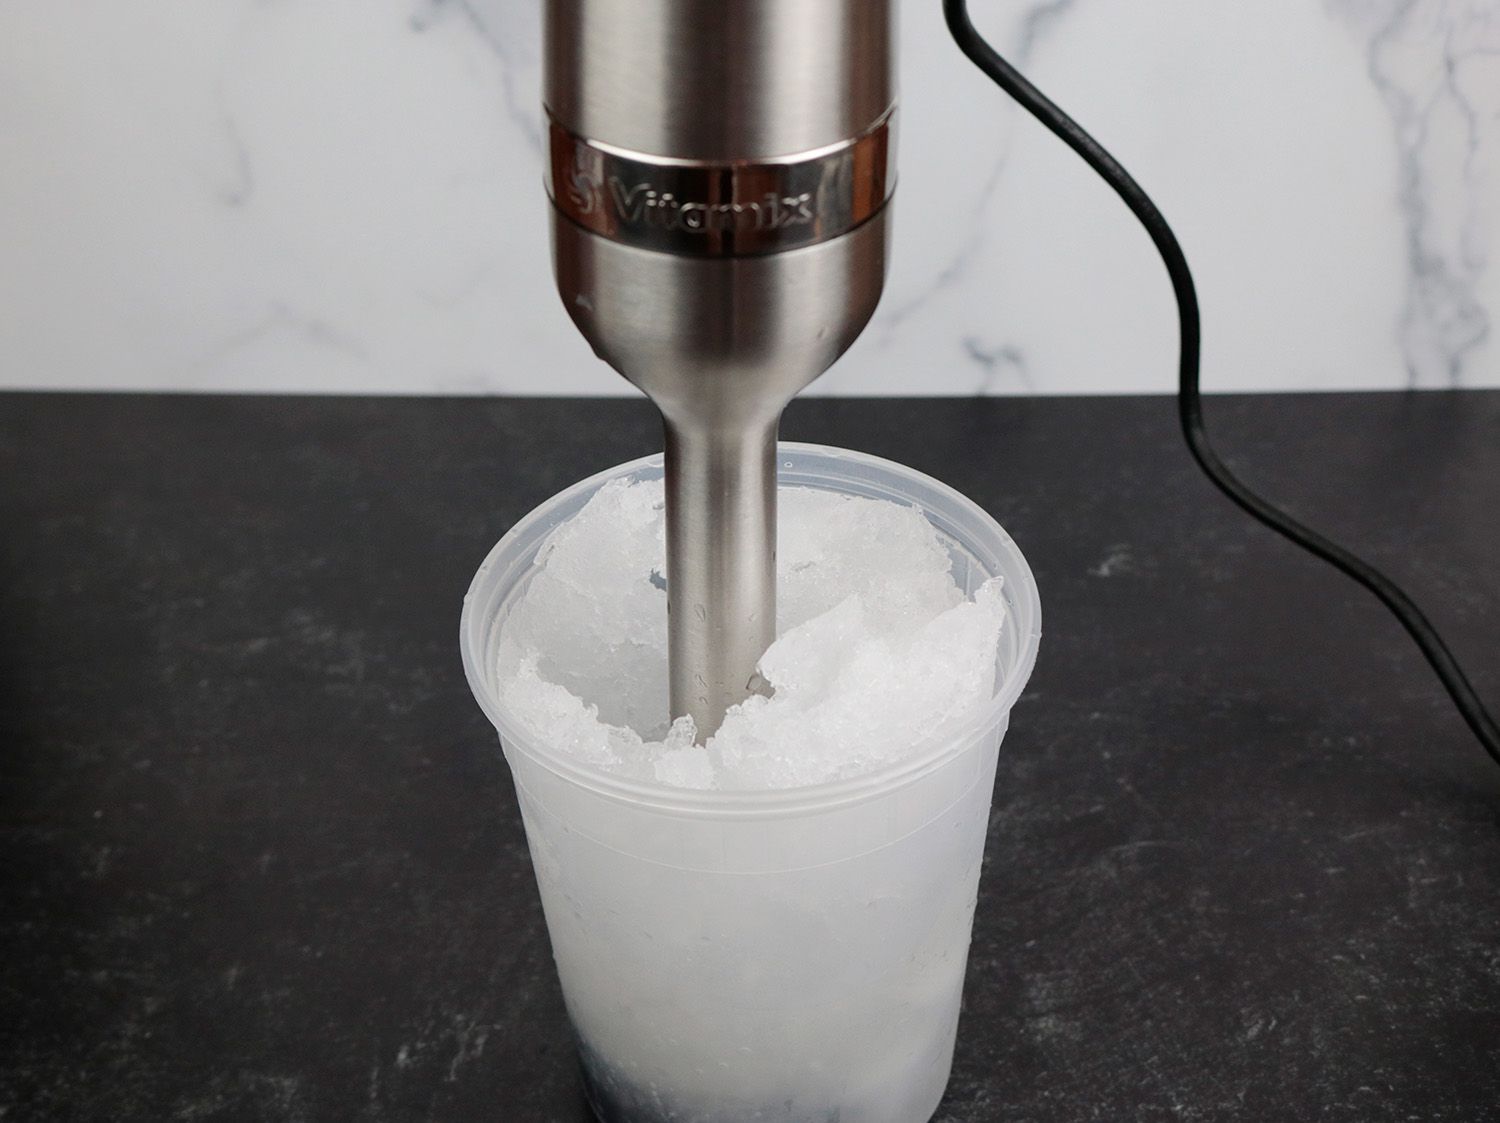 浸没式混合是将冰浸泡在塑料容器中，并将其混合成冰泥